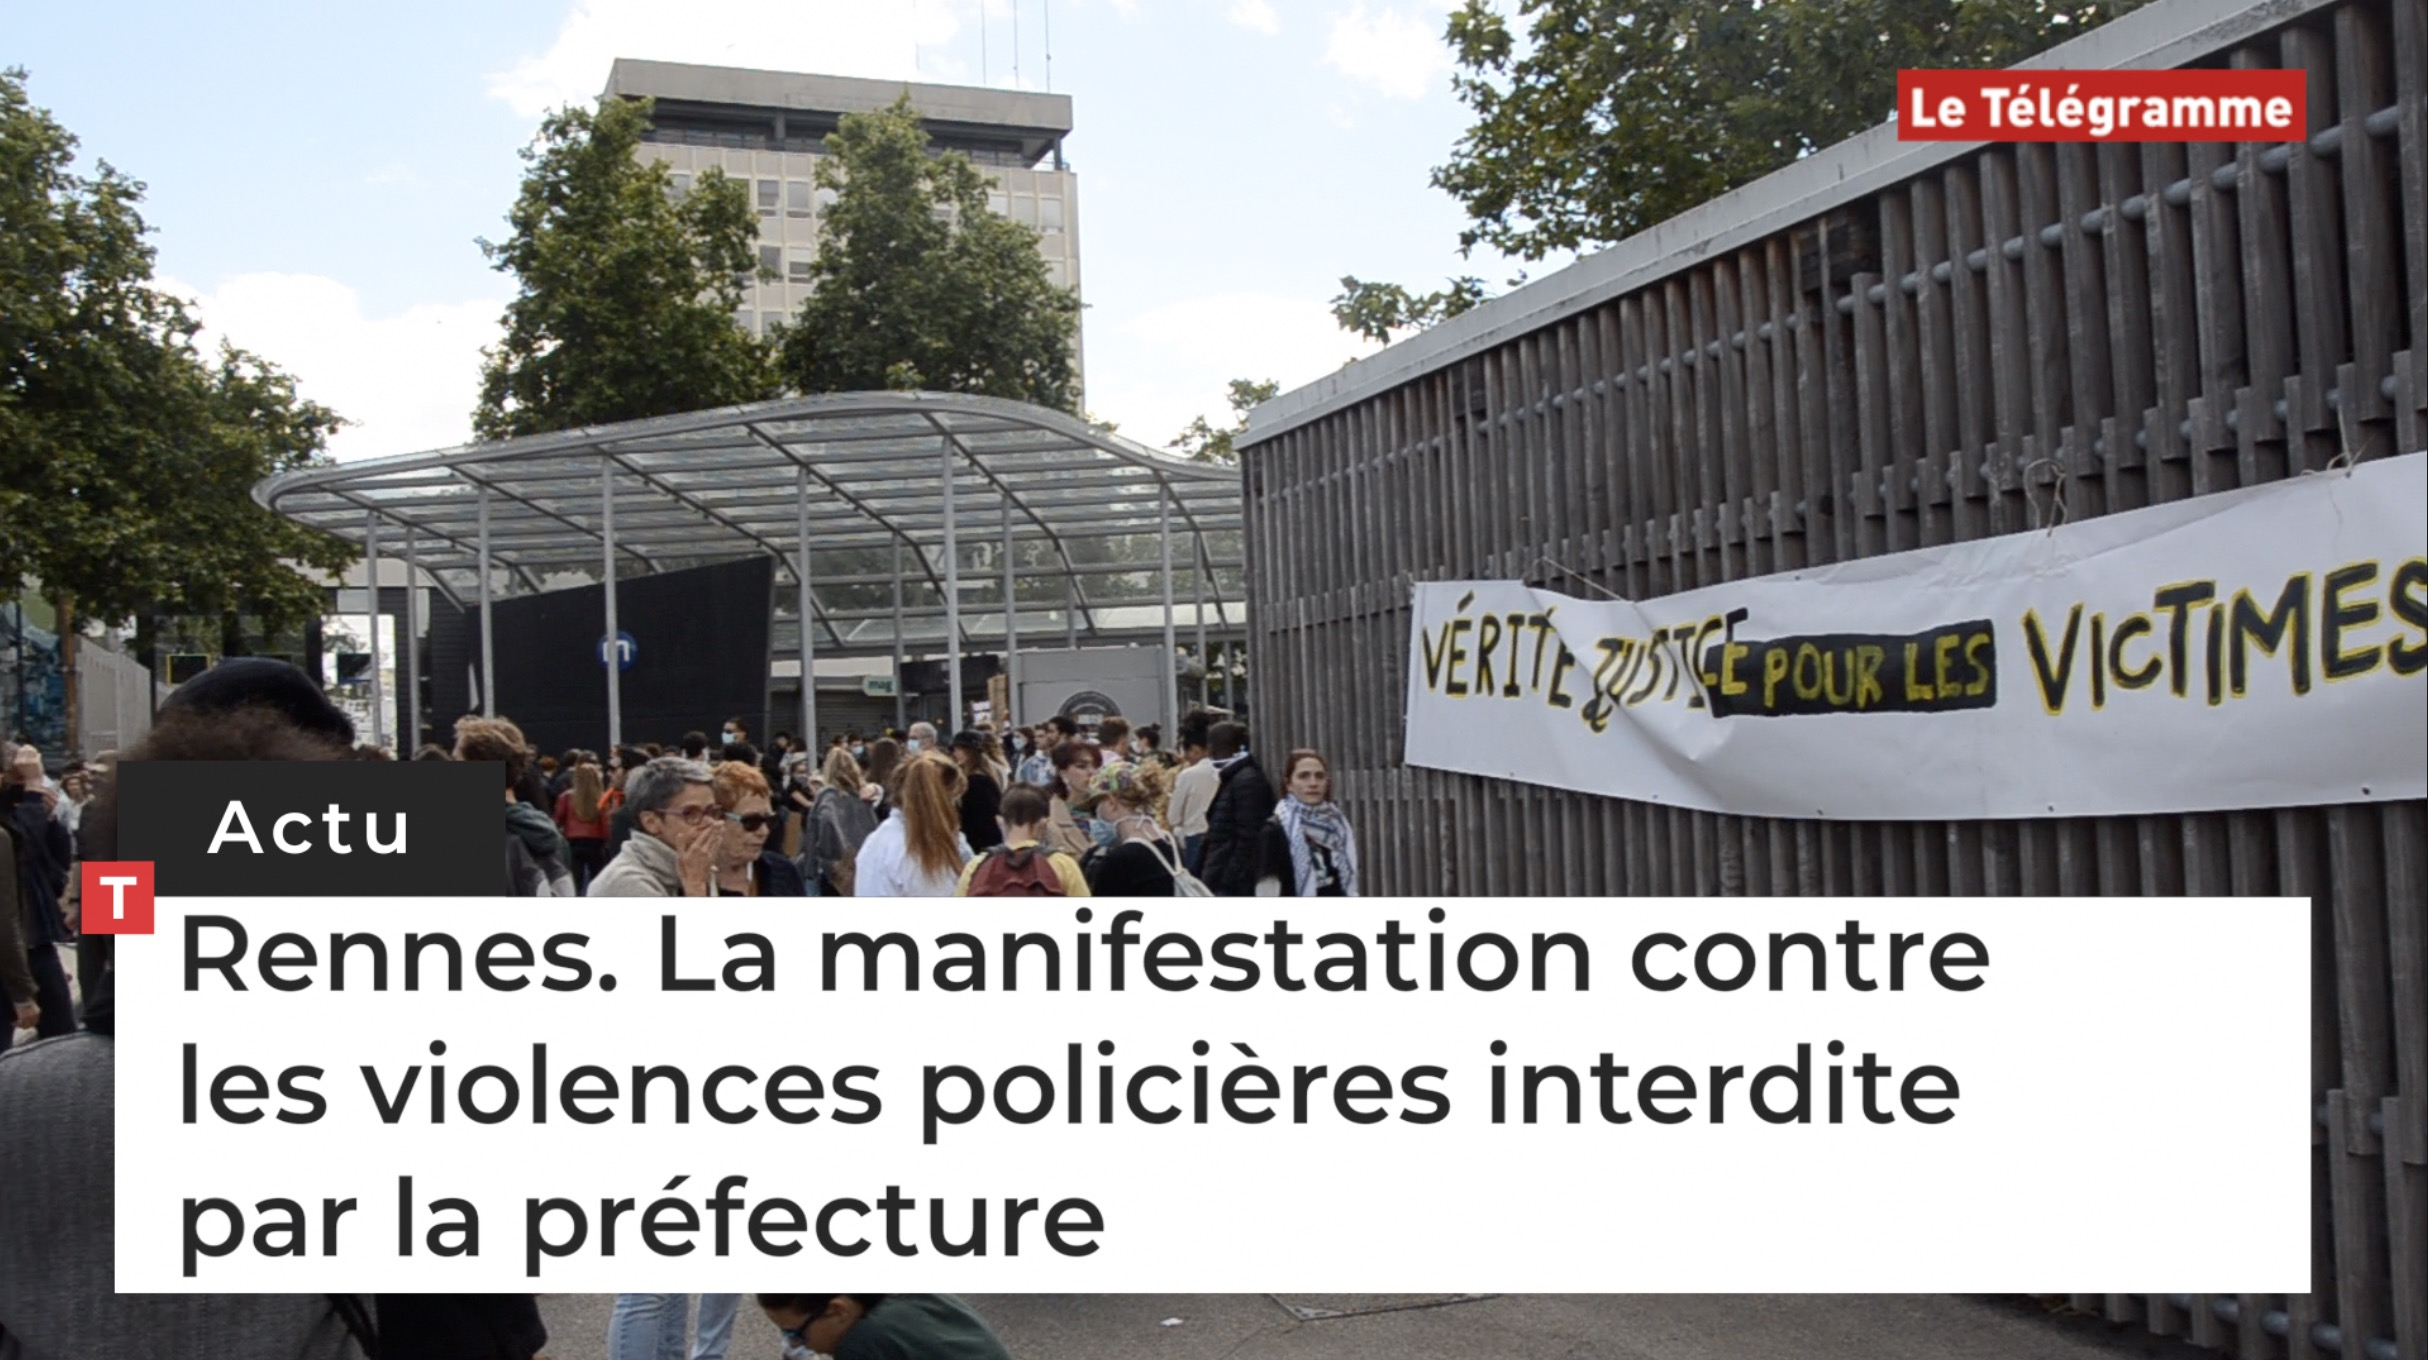 Rennes. La manifestation contre les violences policières interdite par la préfecture (Le Télégramme)